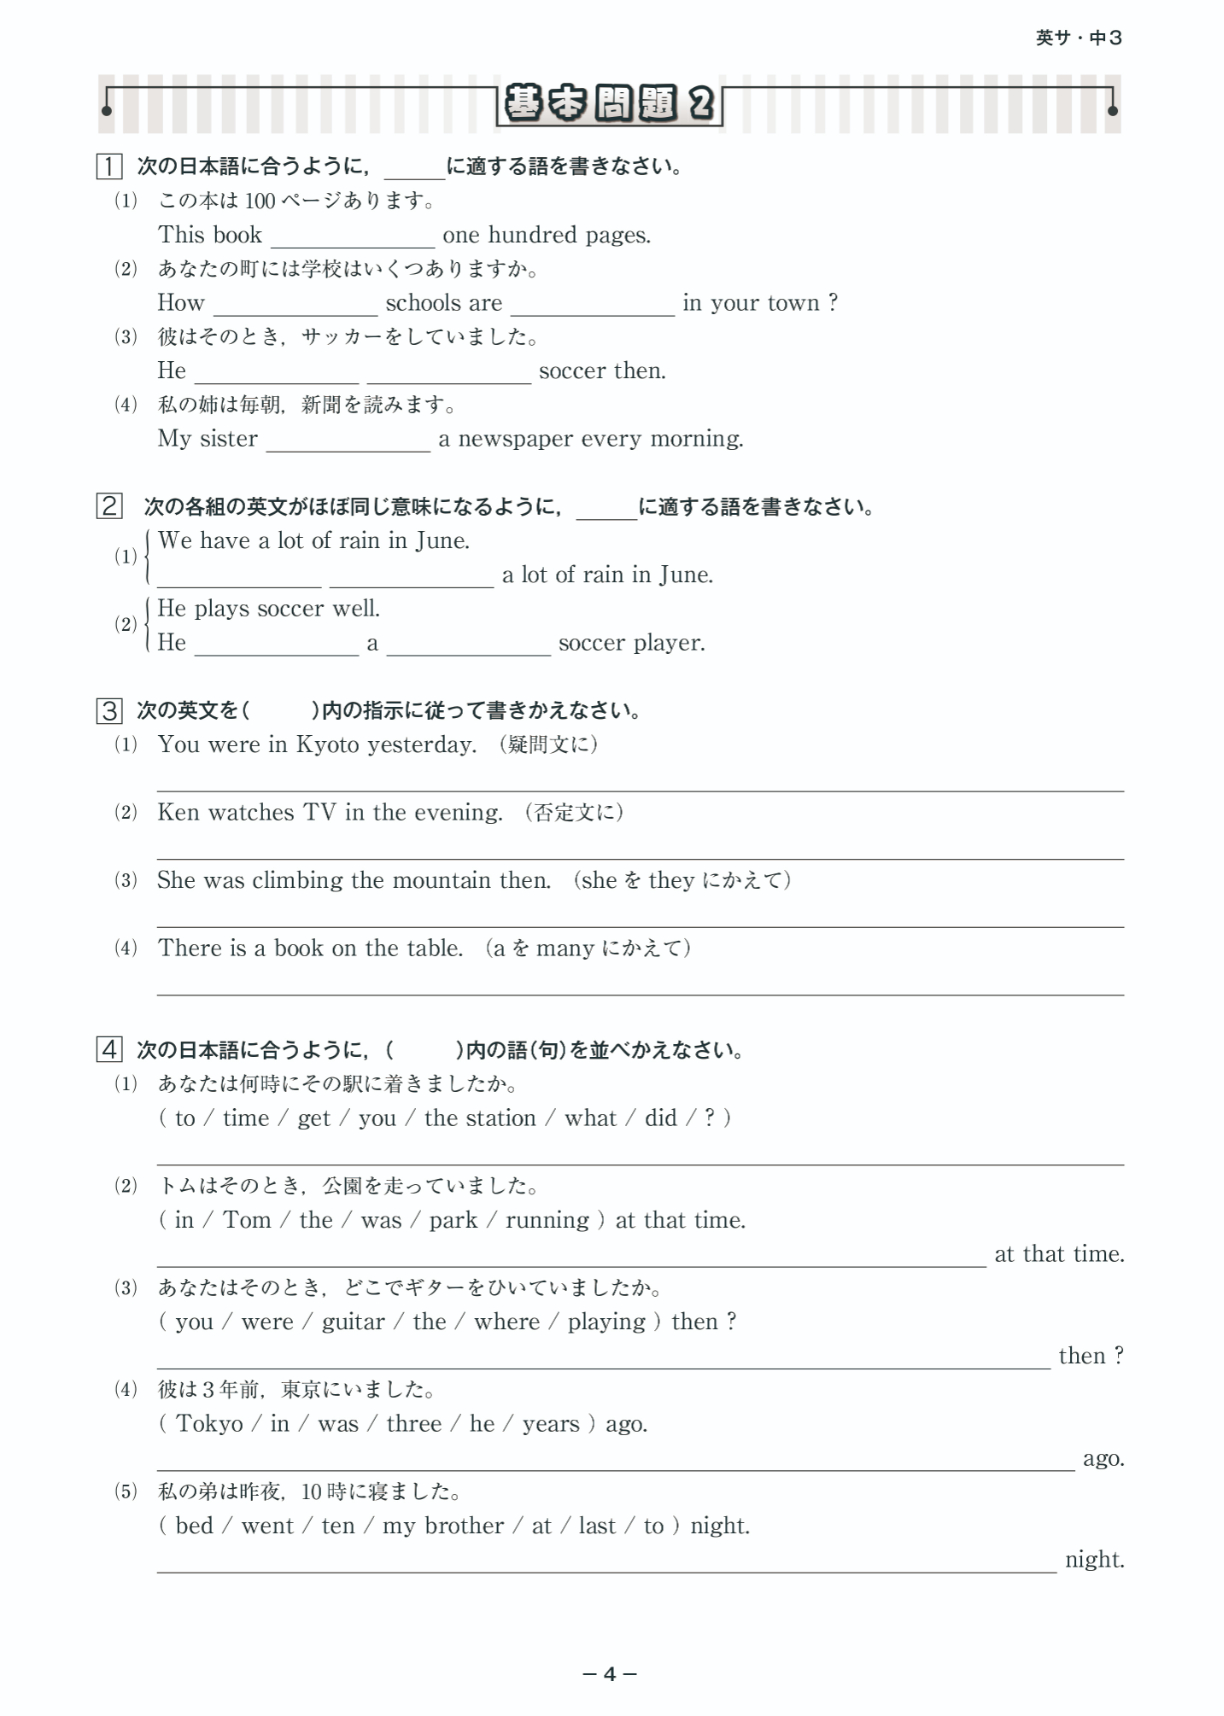 サマー練成(中学) | テキスト教材 | 株式会社学書